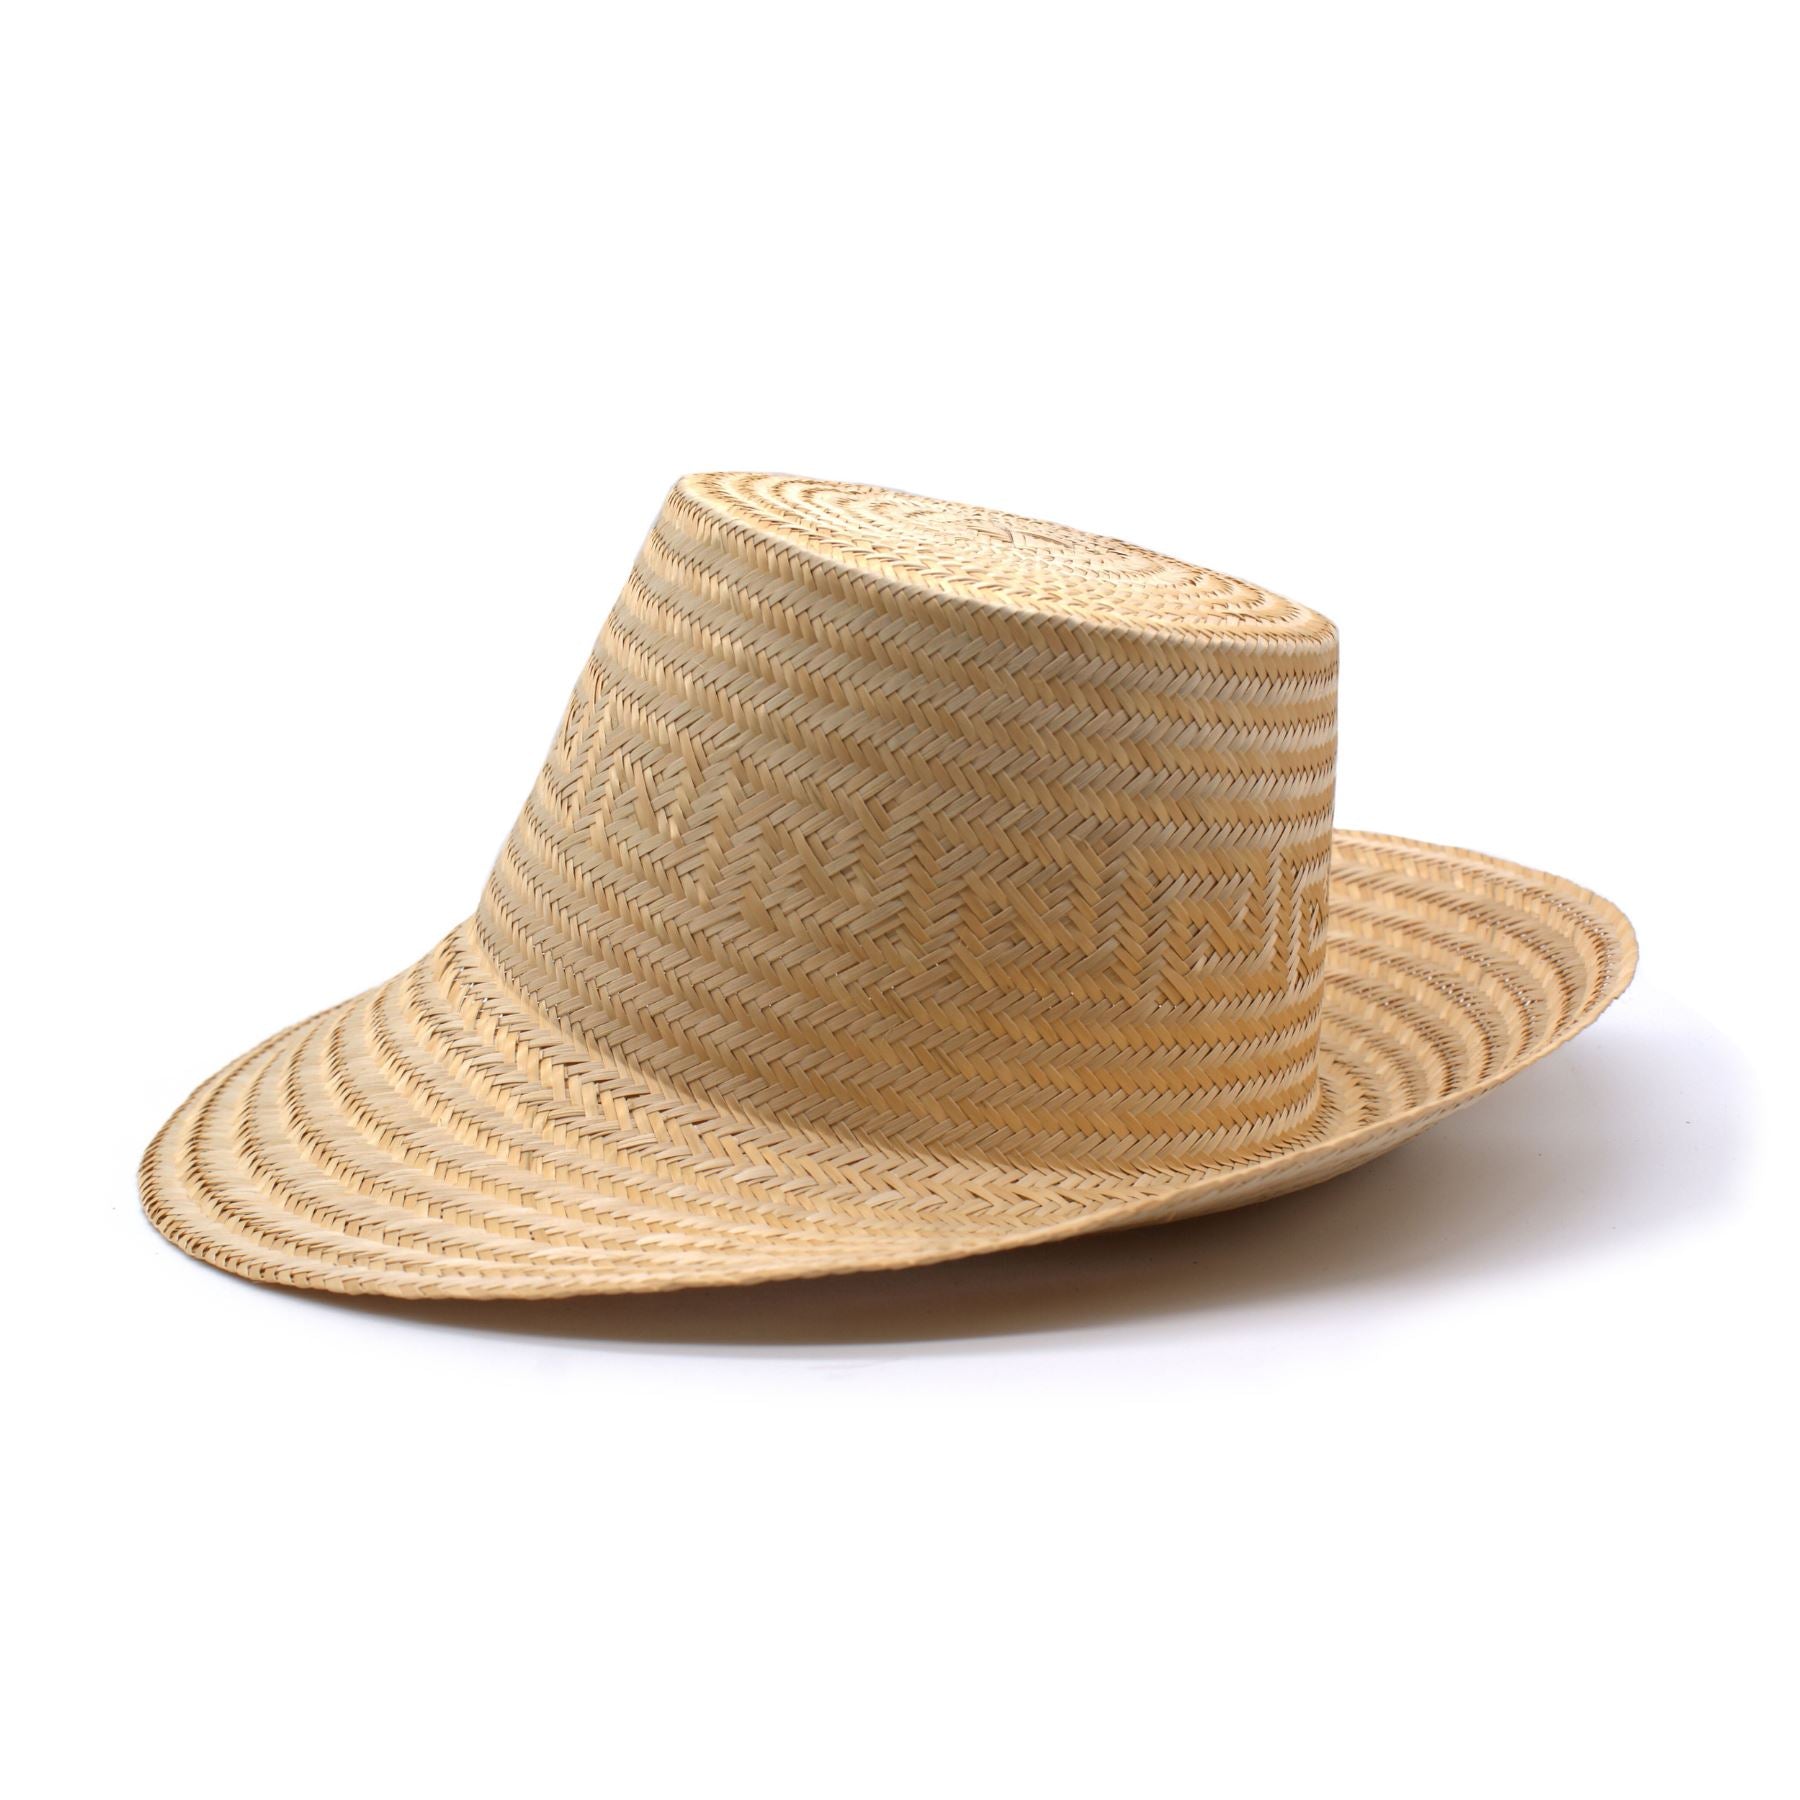 http://www.washein.com/cdn/shop/products/arena-natural-short-brim-straw-hat-hat-washein-149896.jpg?v=1632129830